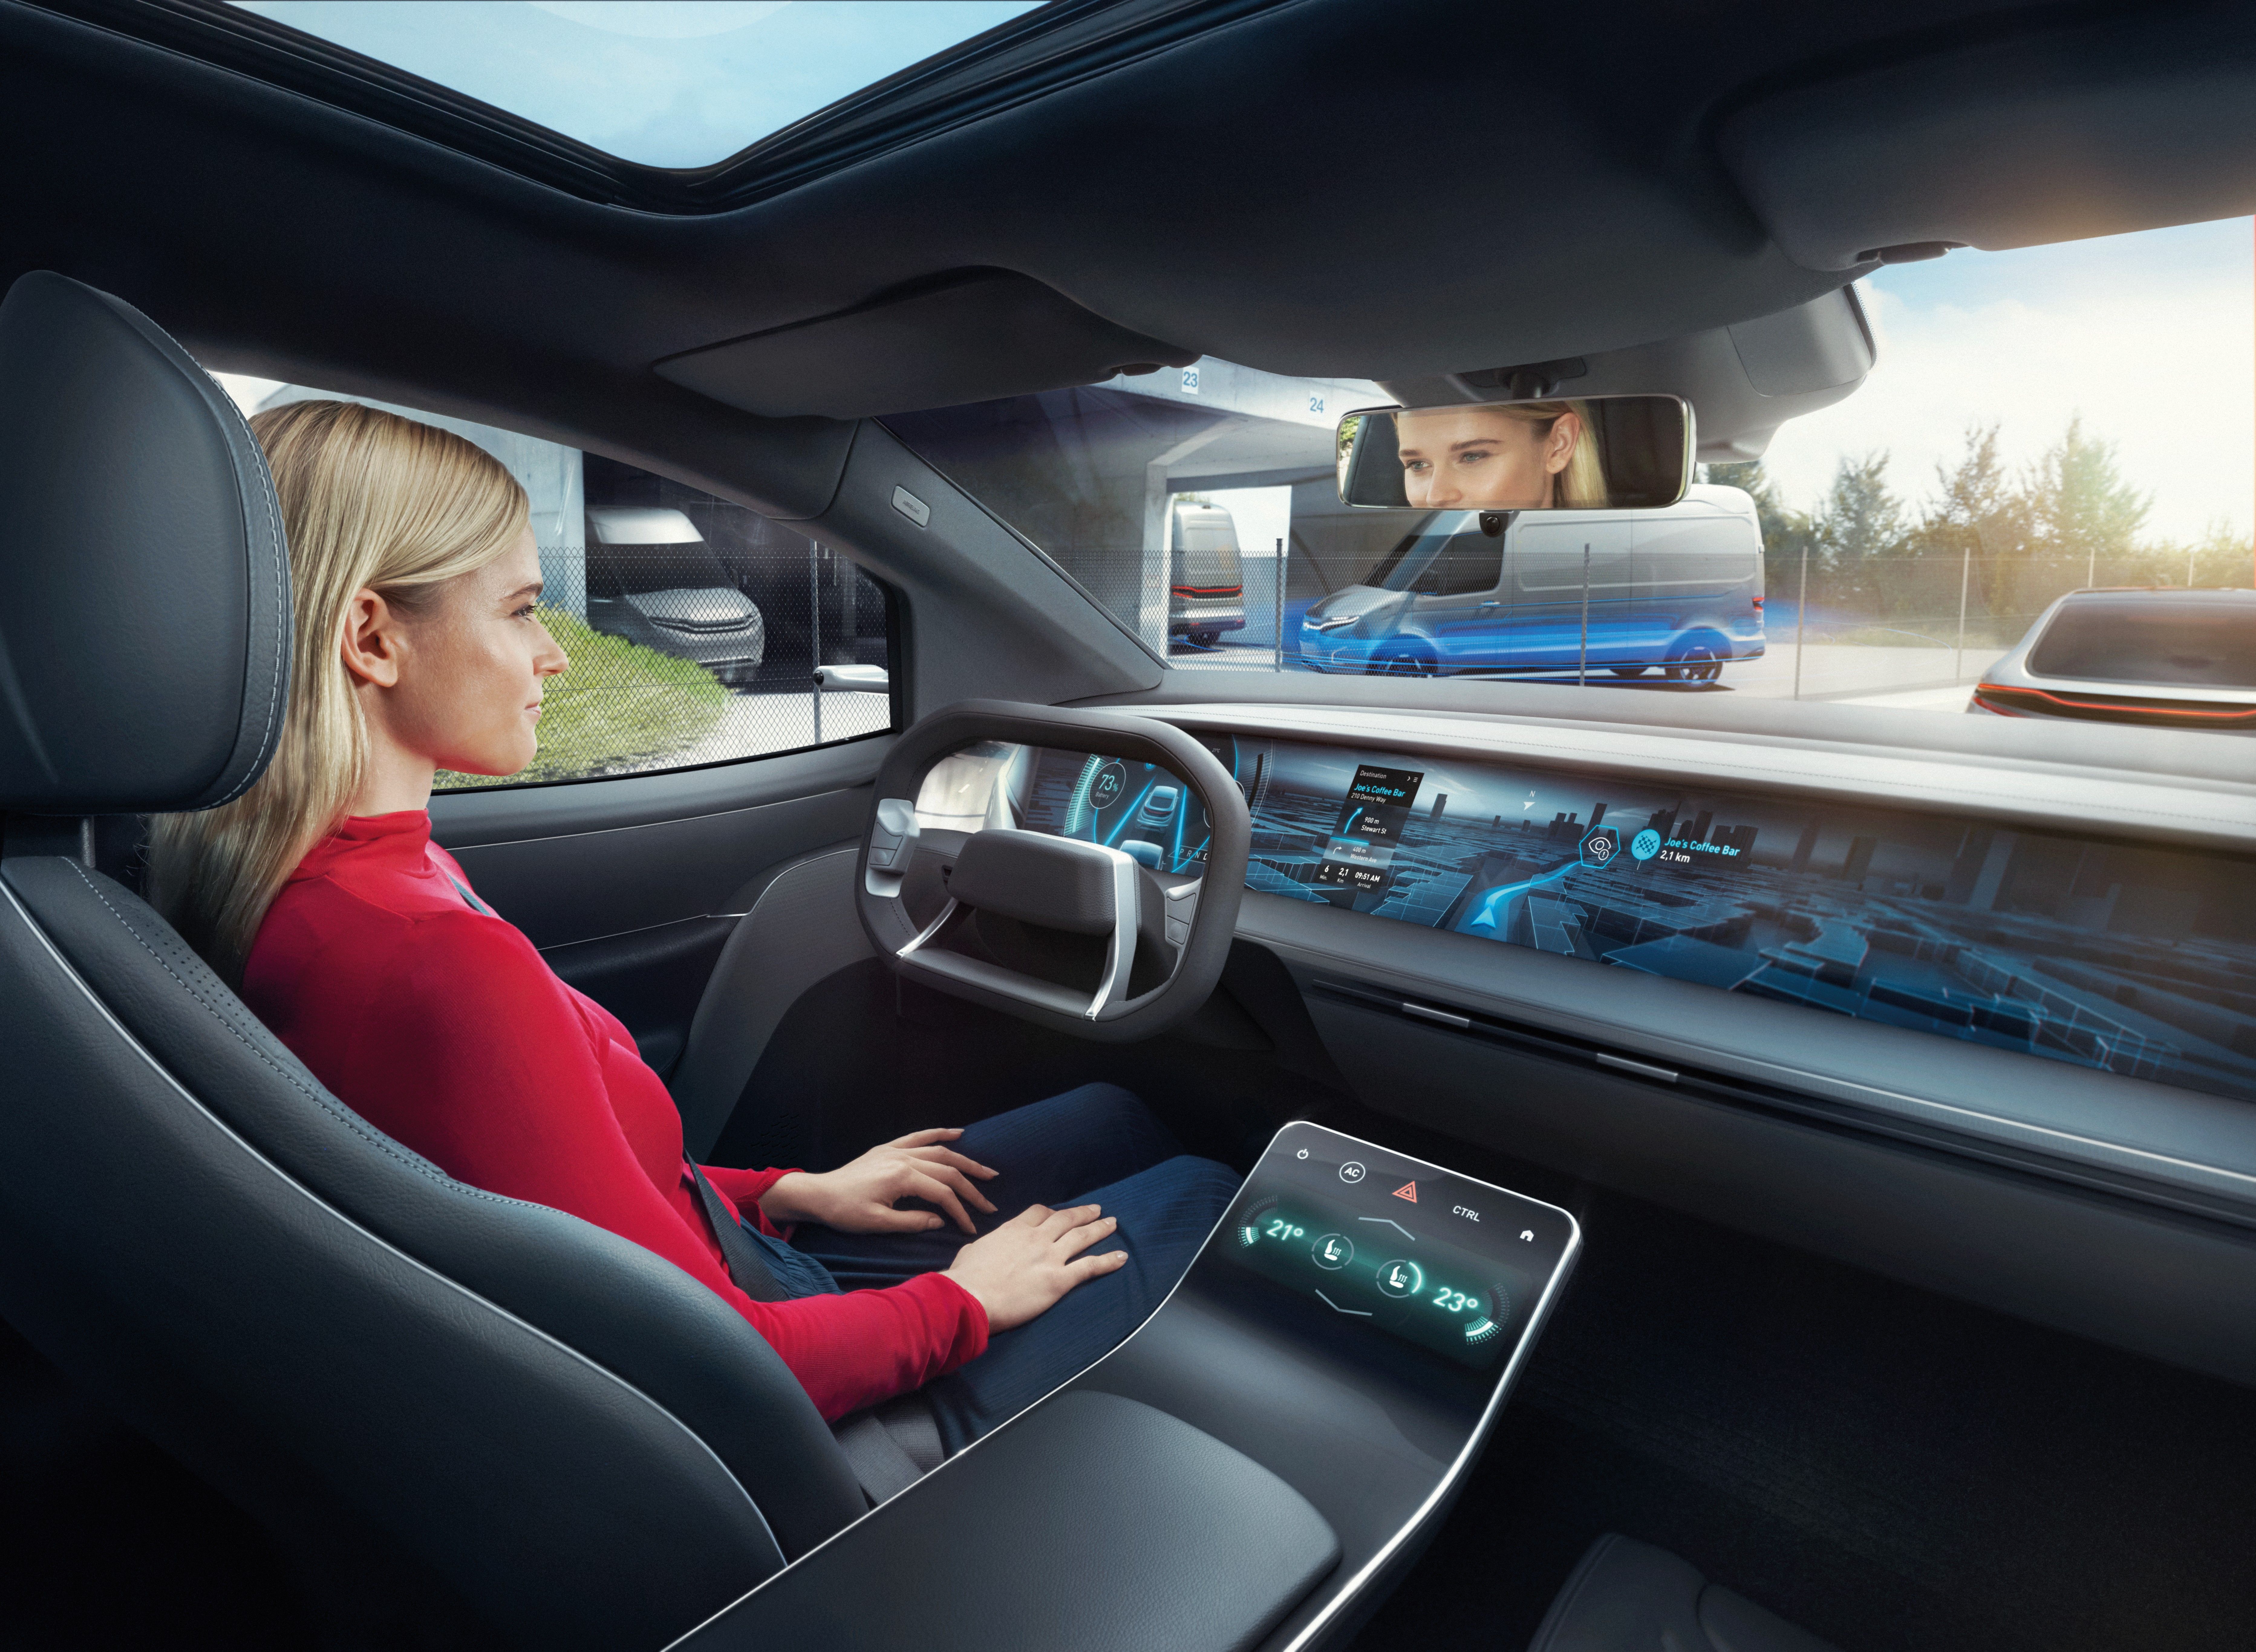 Bosch offre il sistema di percezione video dell’ambiente anche come prodotto software standalone